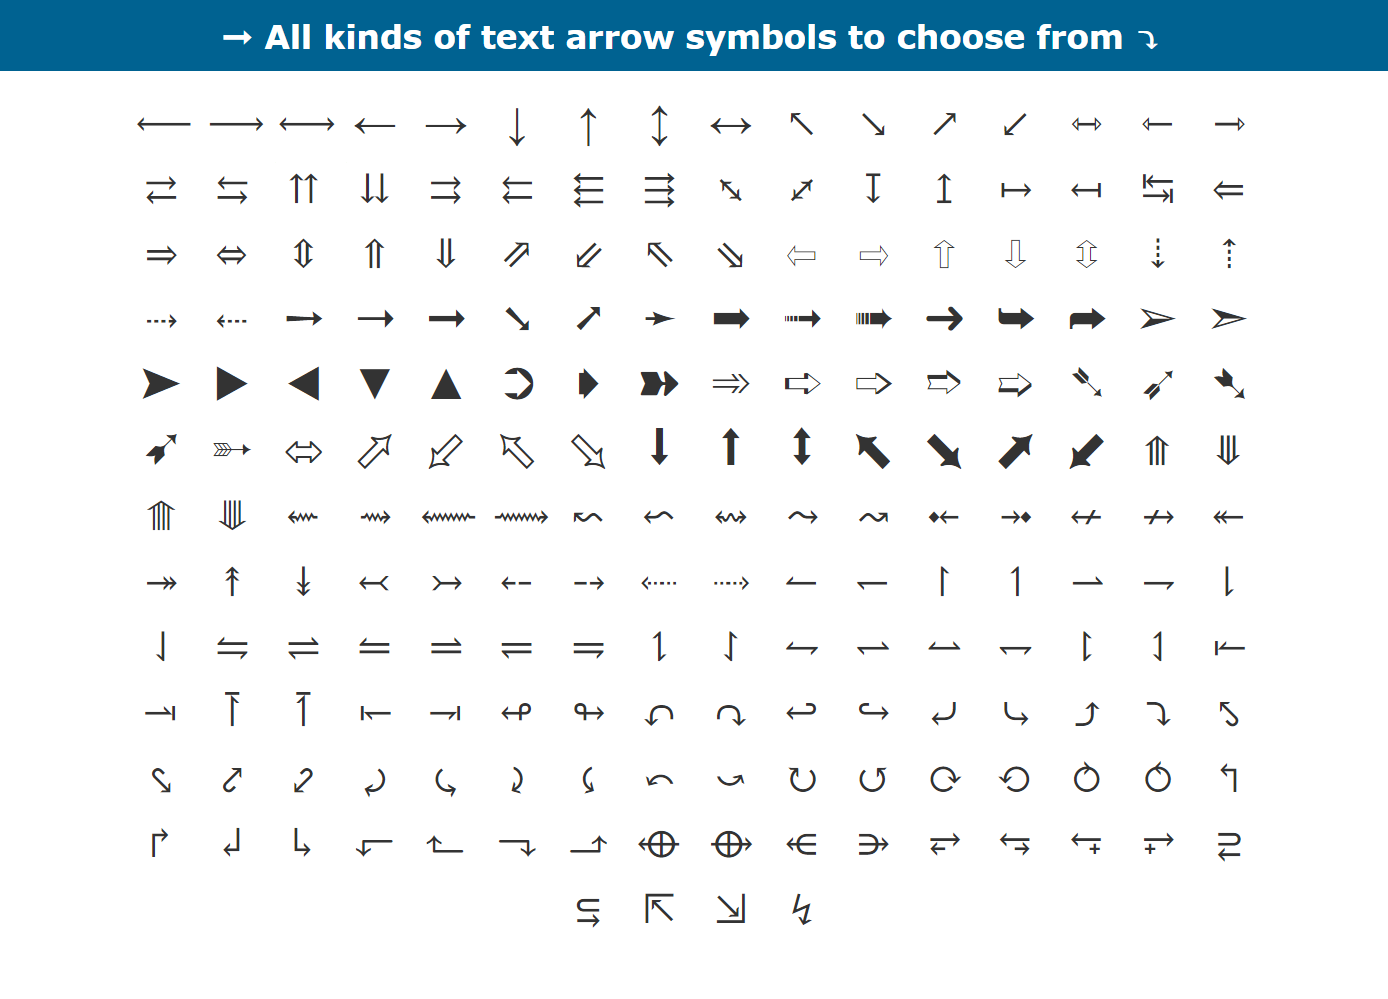 ASCII Code For Arrow Symbol